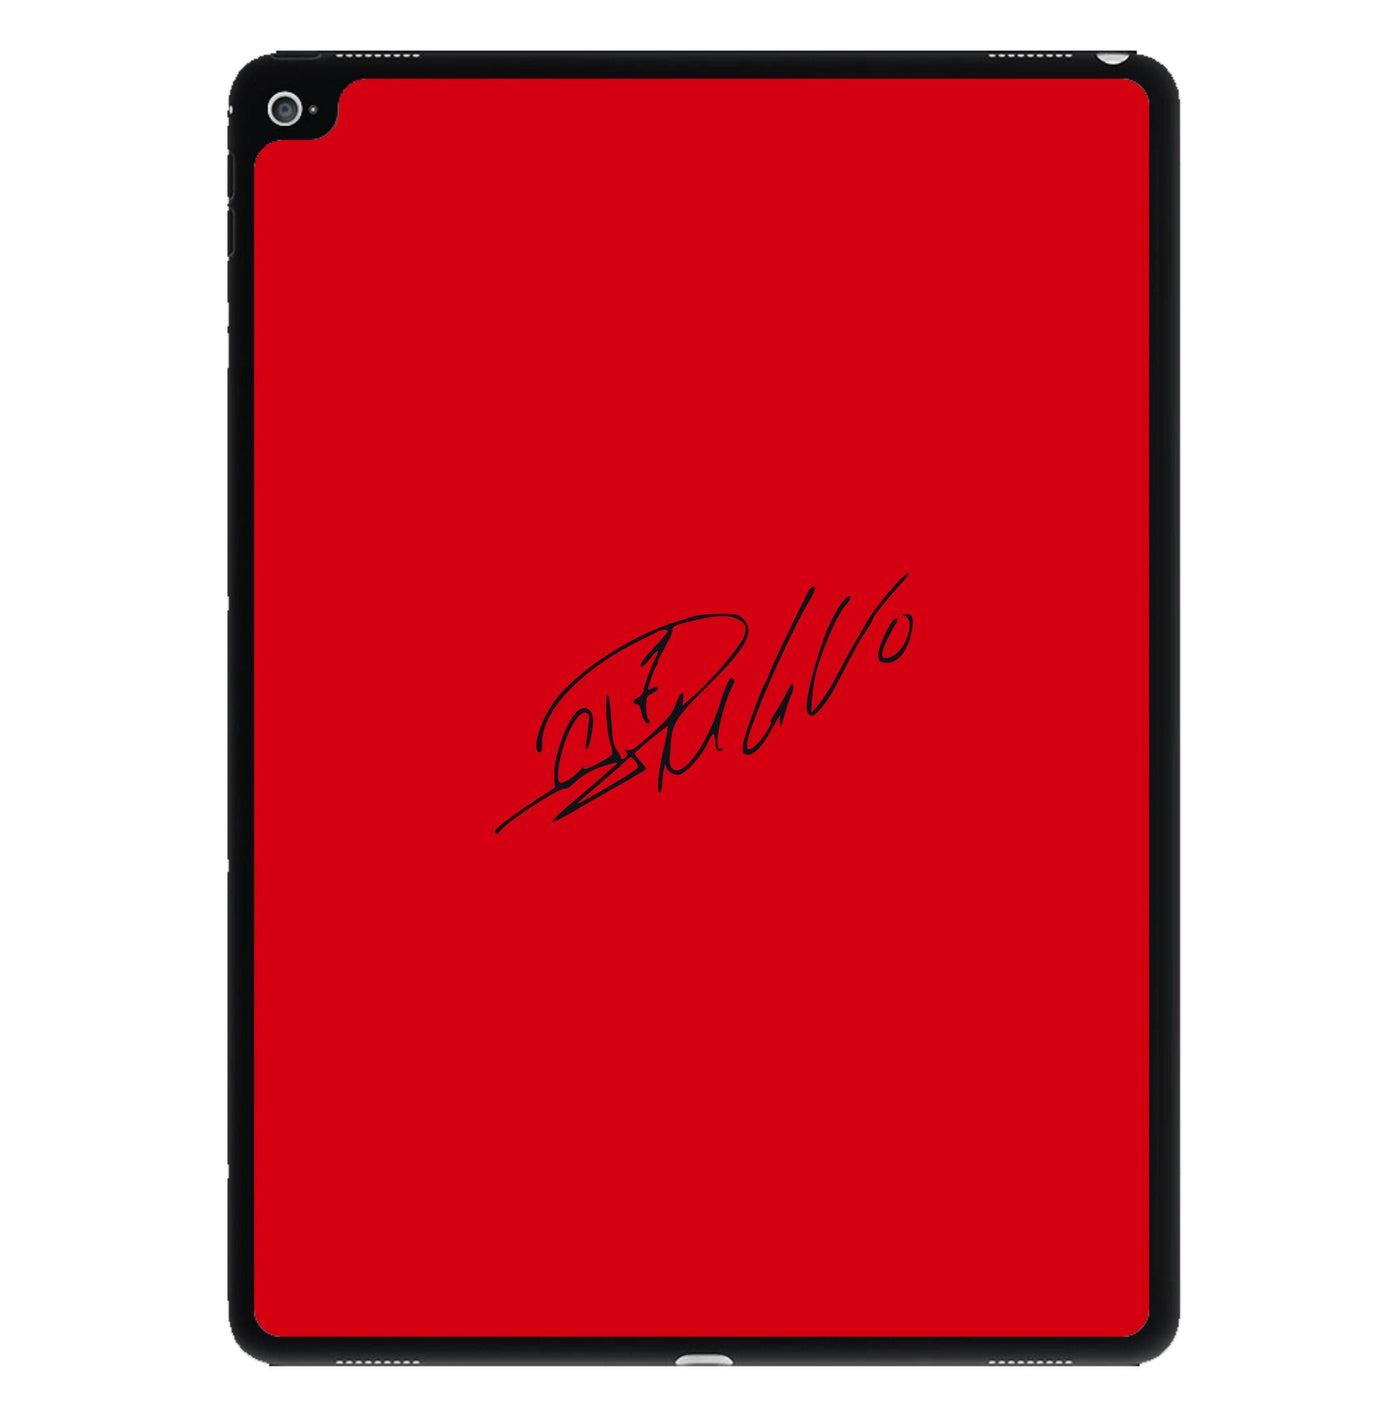 Signature - Ronaldo iPad Case